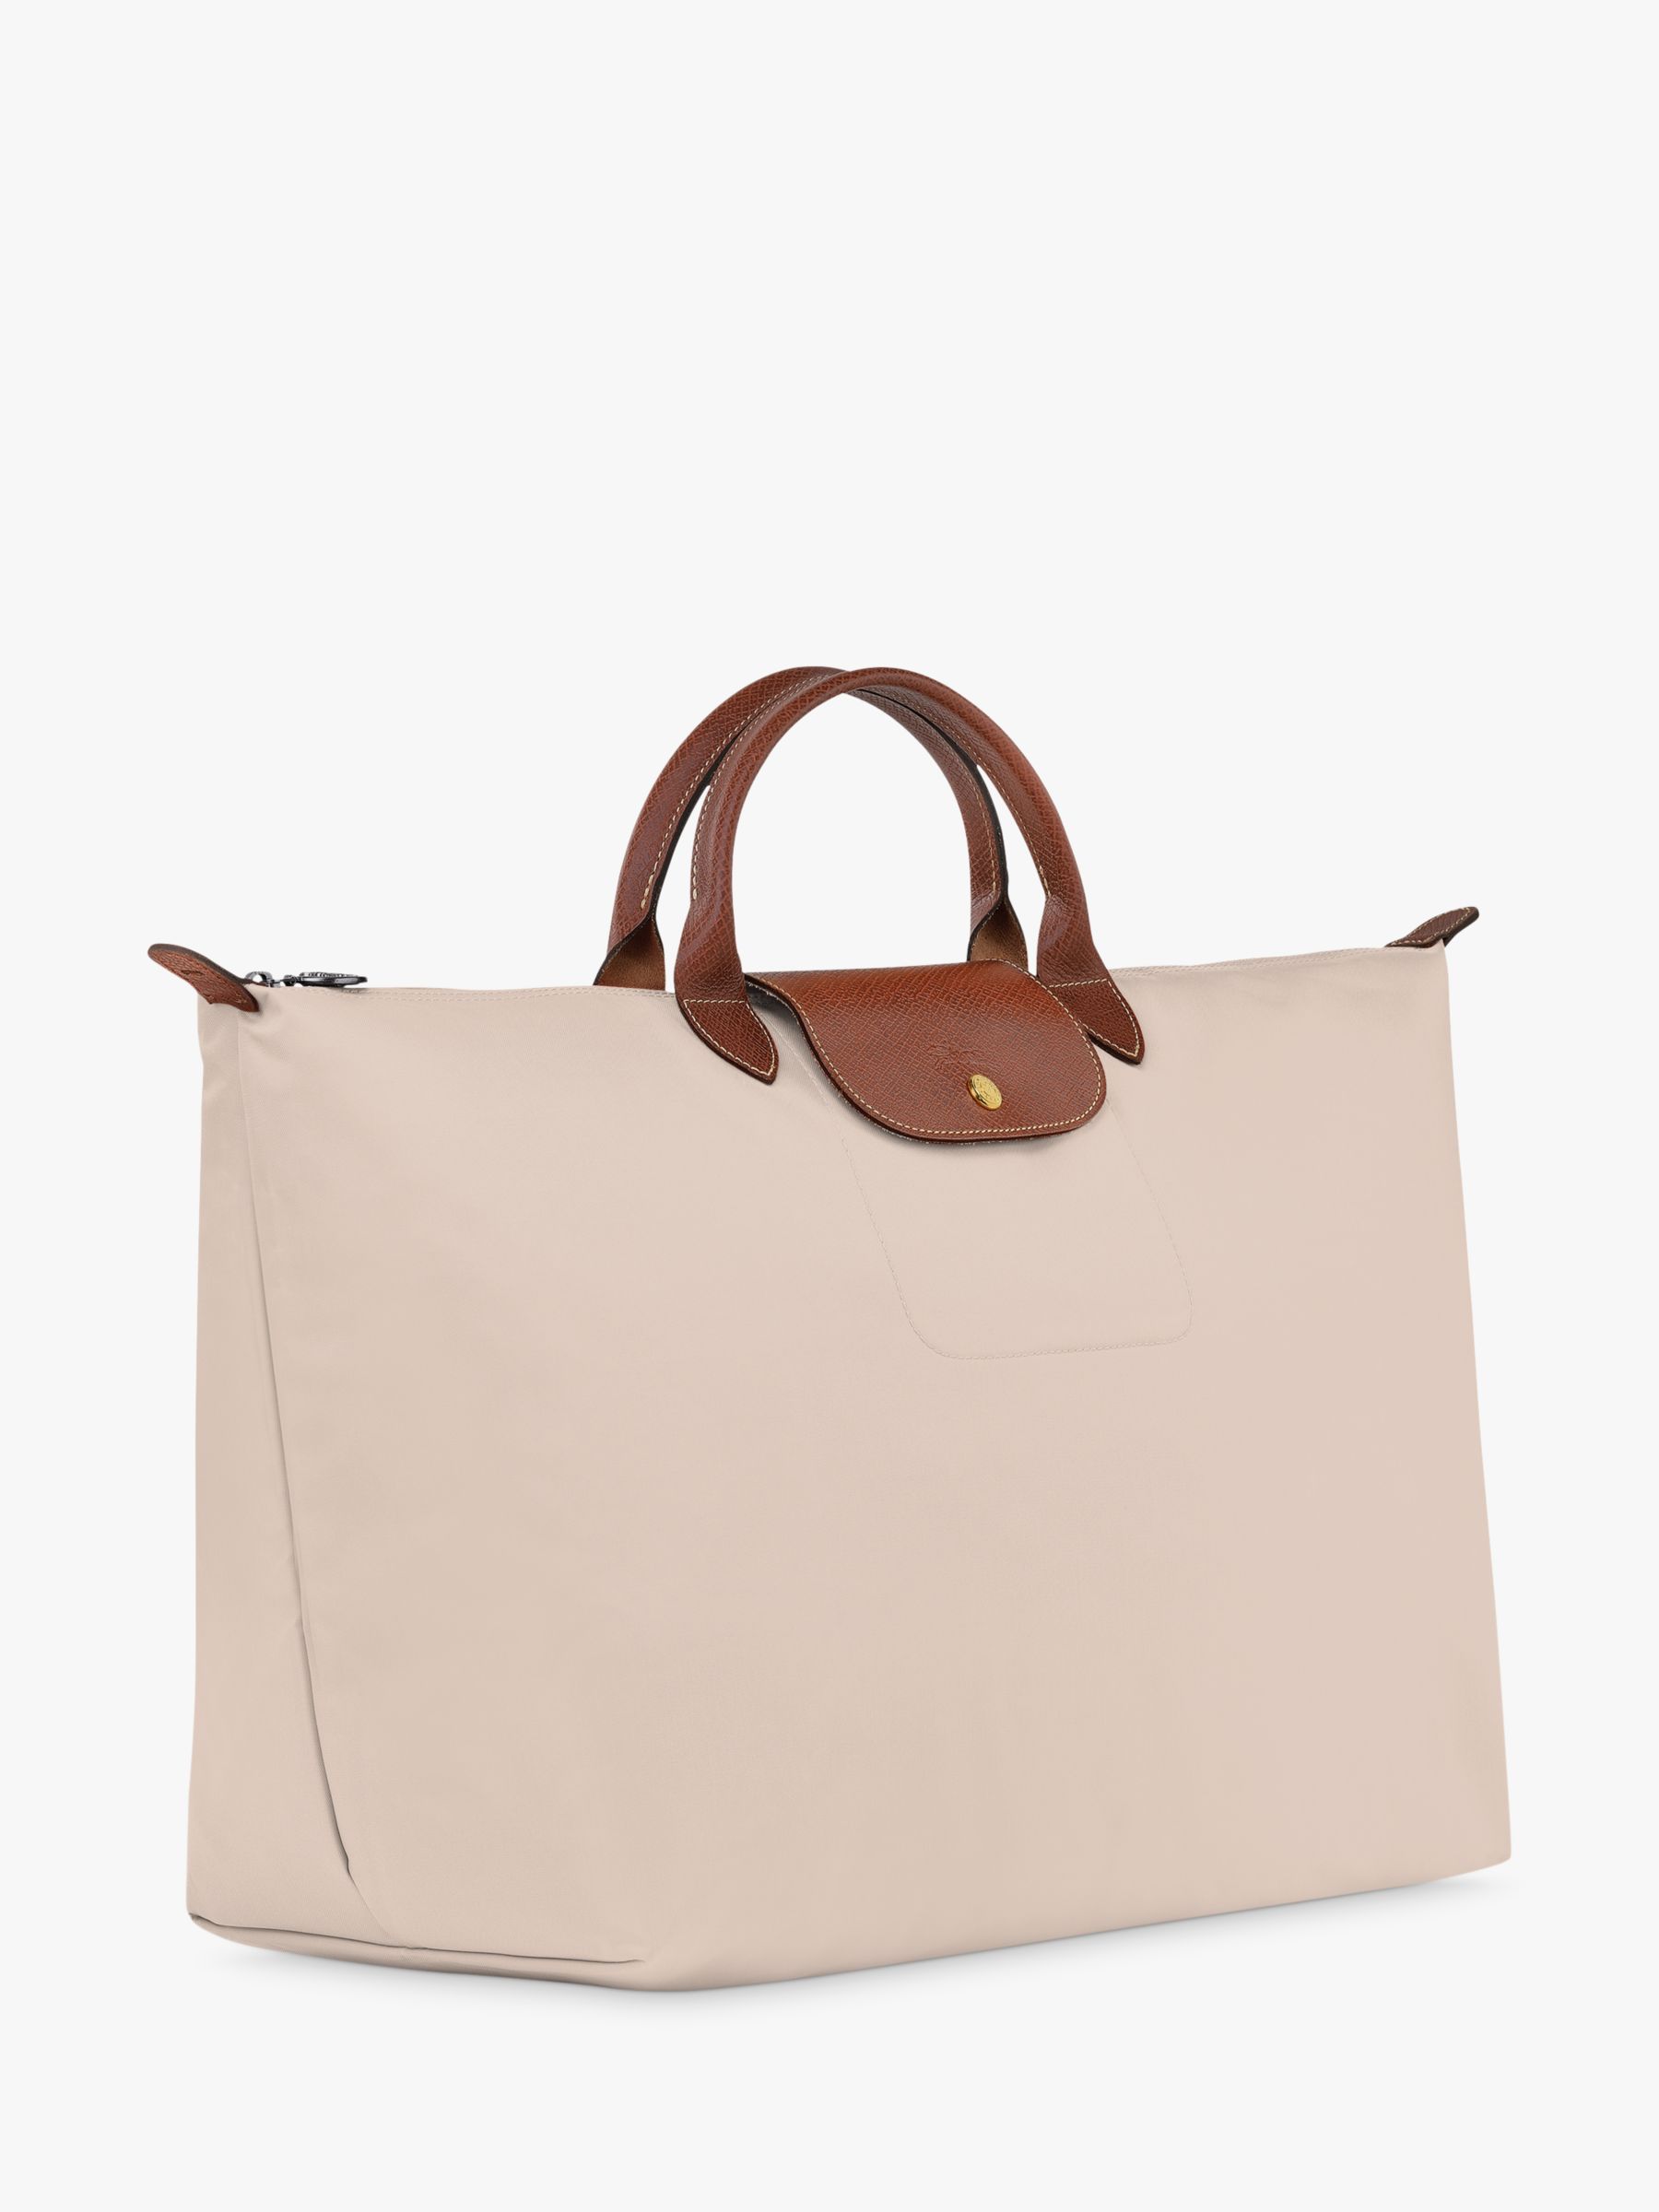 Longchamp Le Pliage Original Travel Bag, Paper at John Lewis & Partners